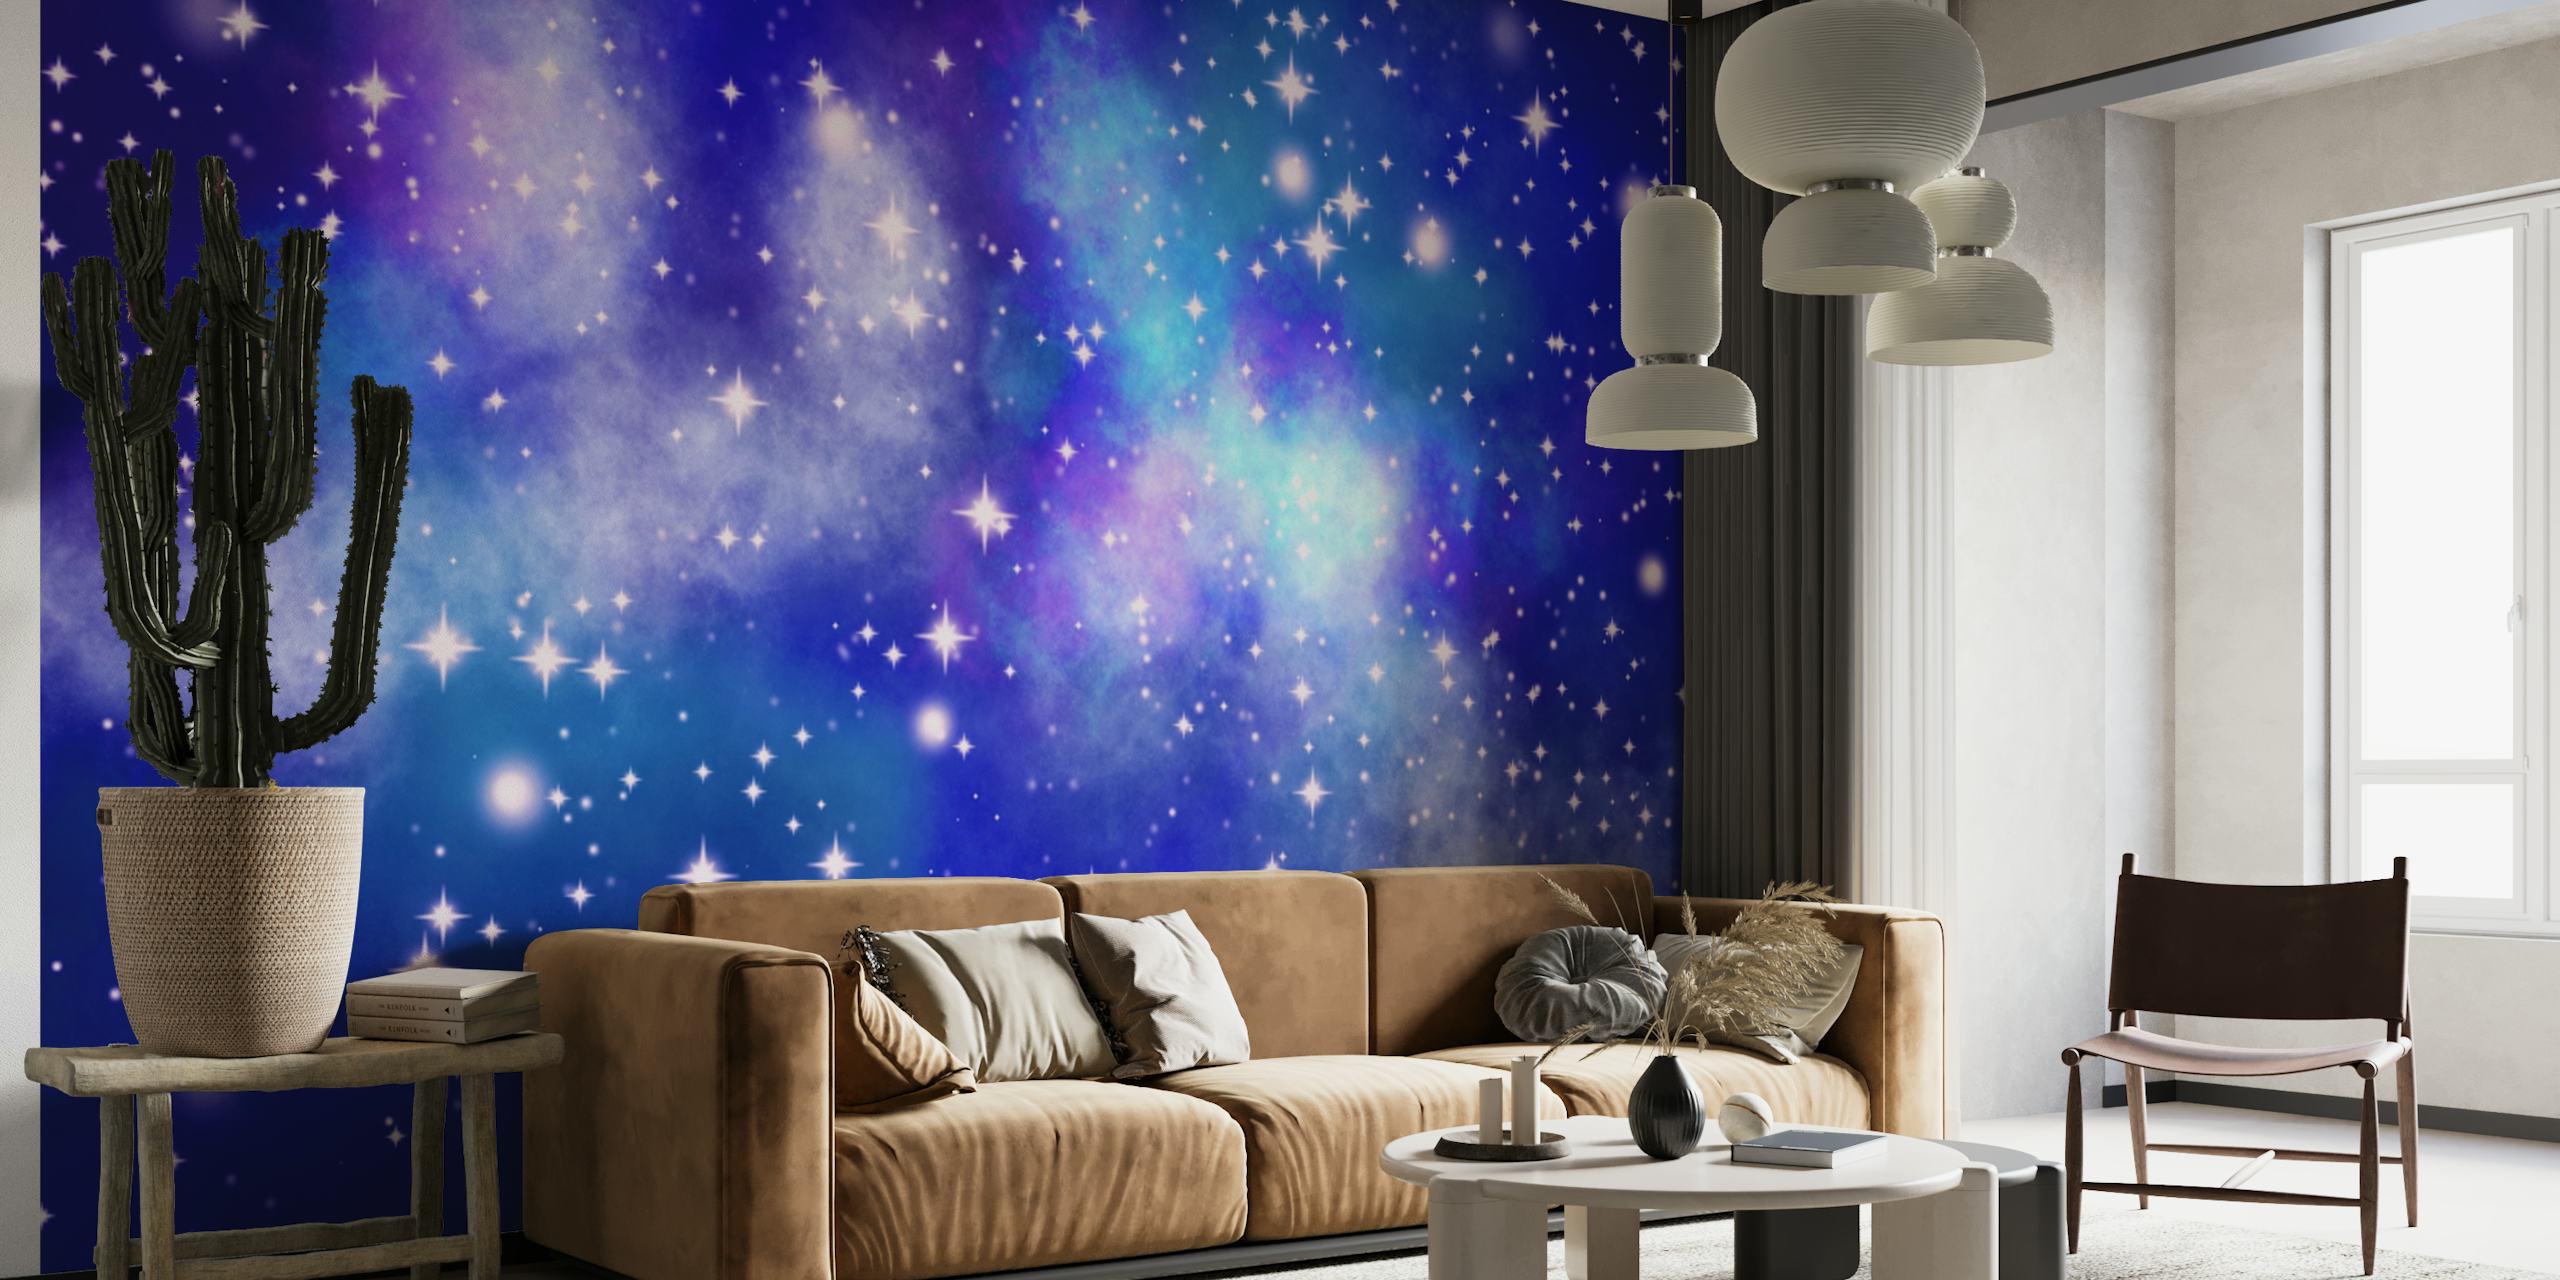 Céu noturno estrelado com vários tons de azul e estrelas cintilantes representando um fotomural vinílico de parede com vista para a galáxia